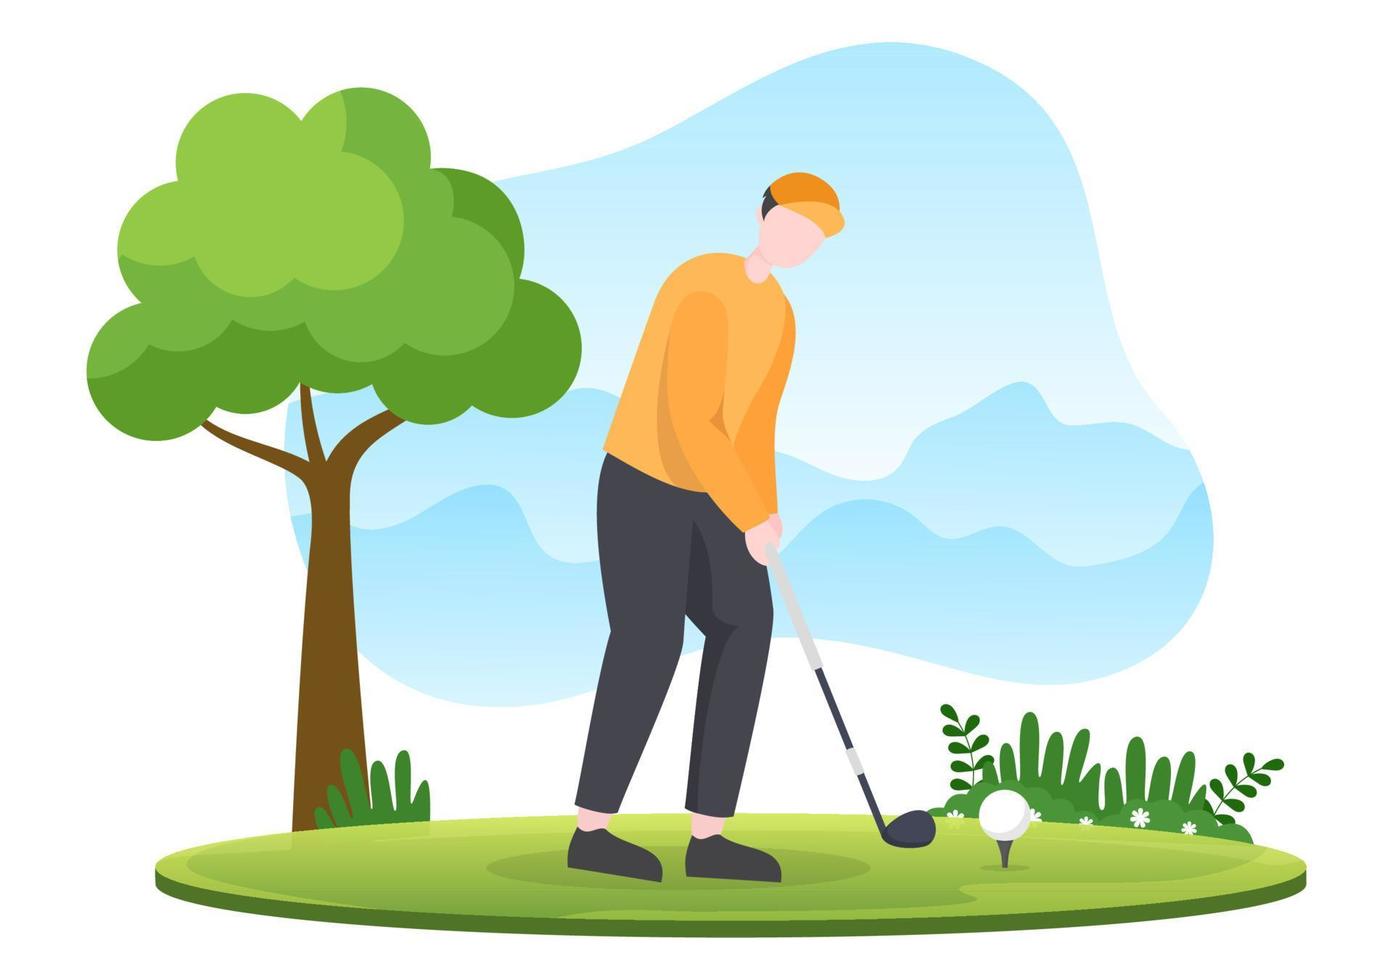 spielen von golfsport mit flaggen, sandboden, sandbunker und ausrüstung auf grünen pflanzen im freien hof in flacher karikaturhintergrundillustration vektor